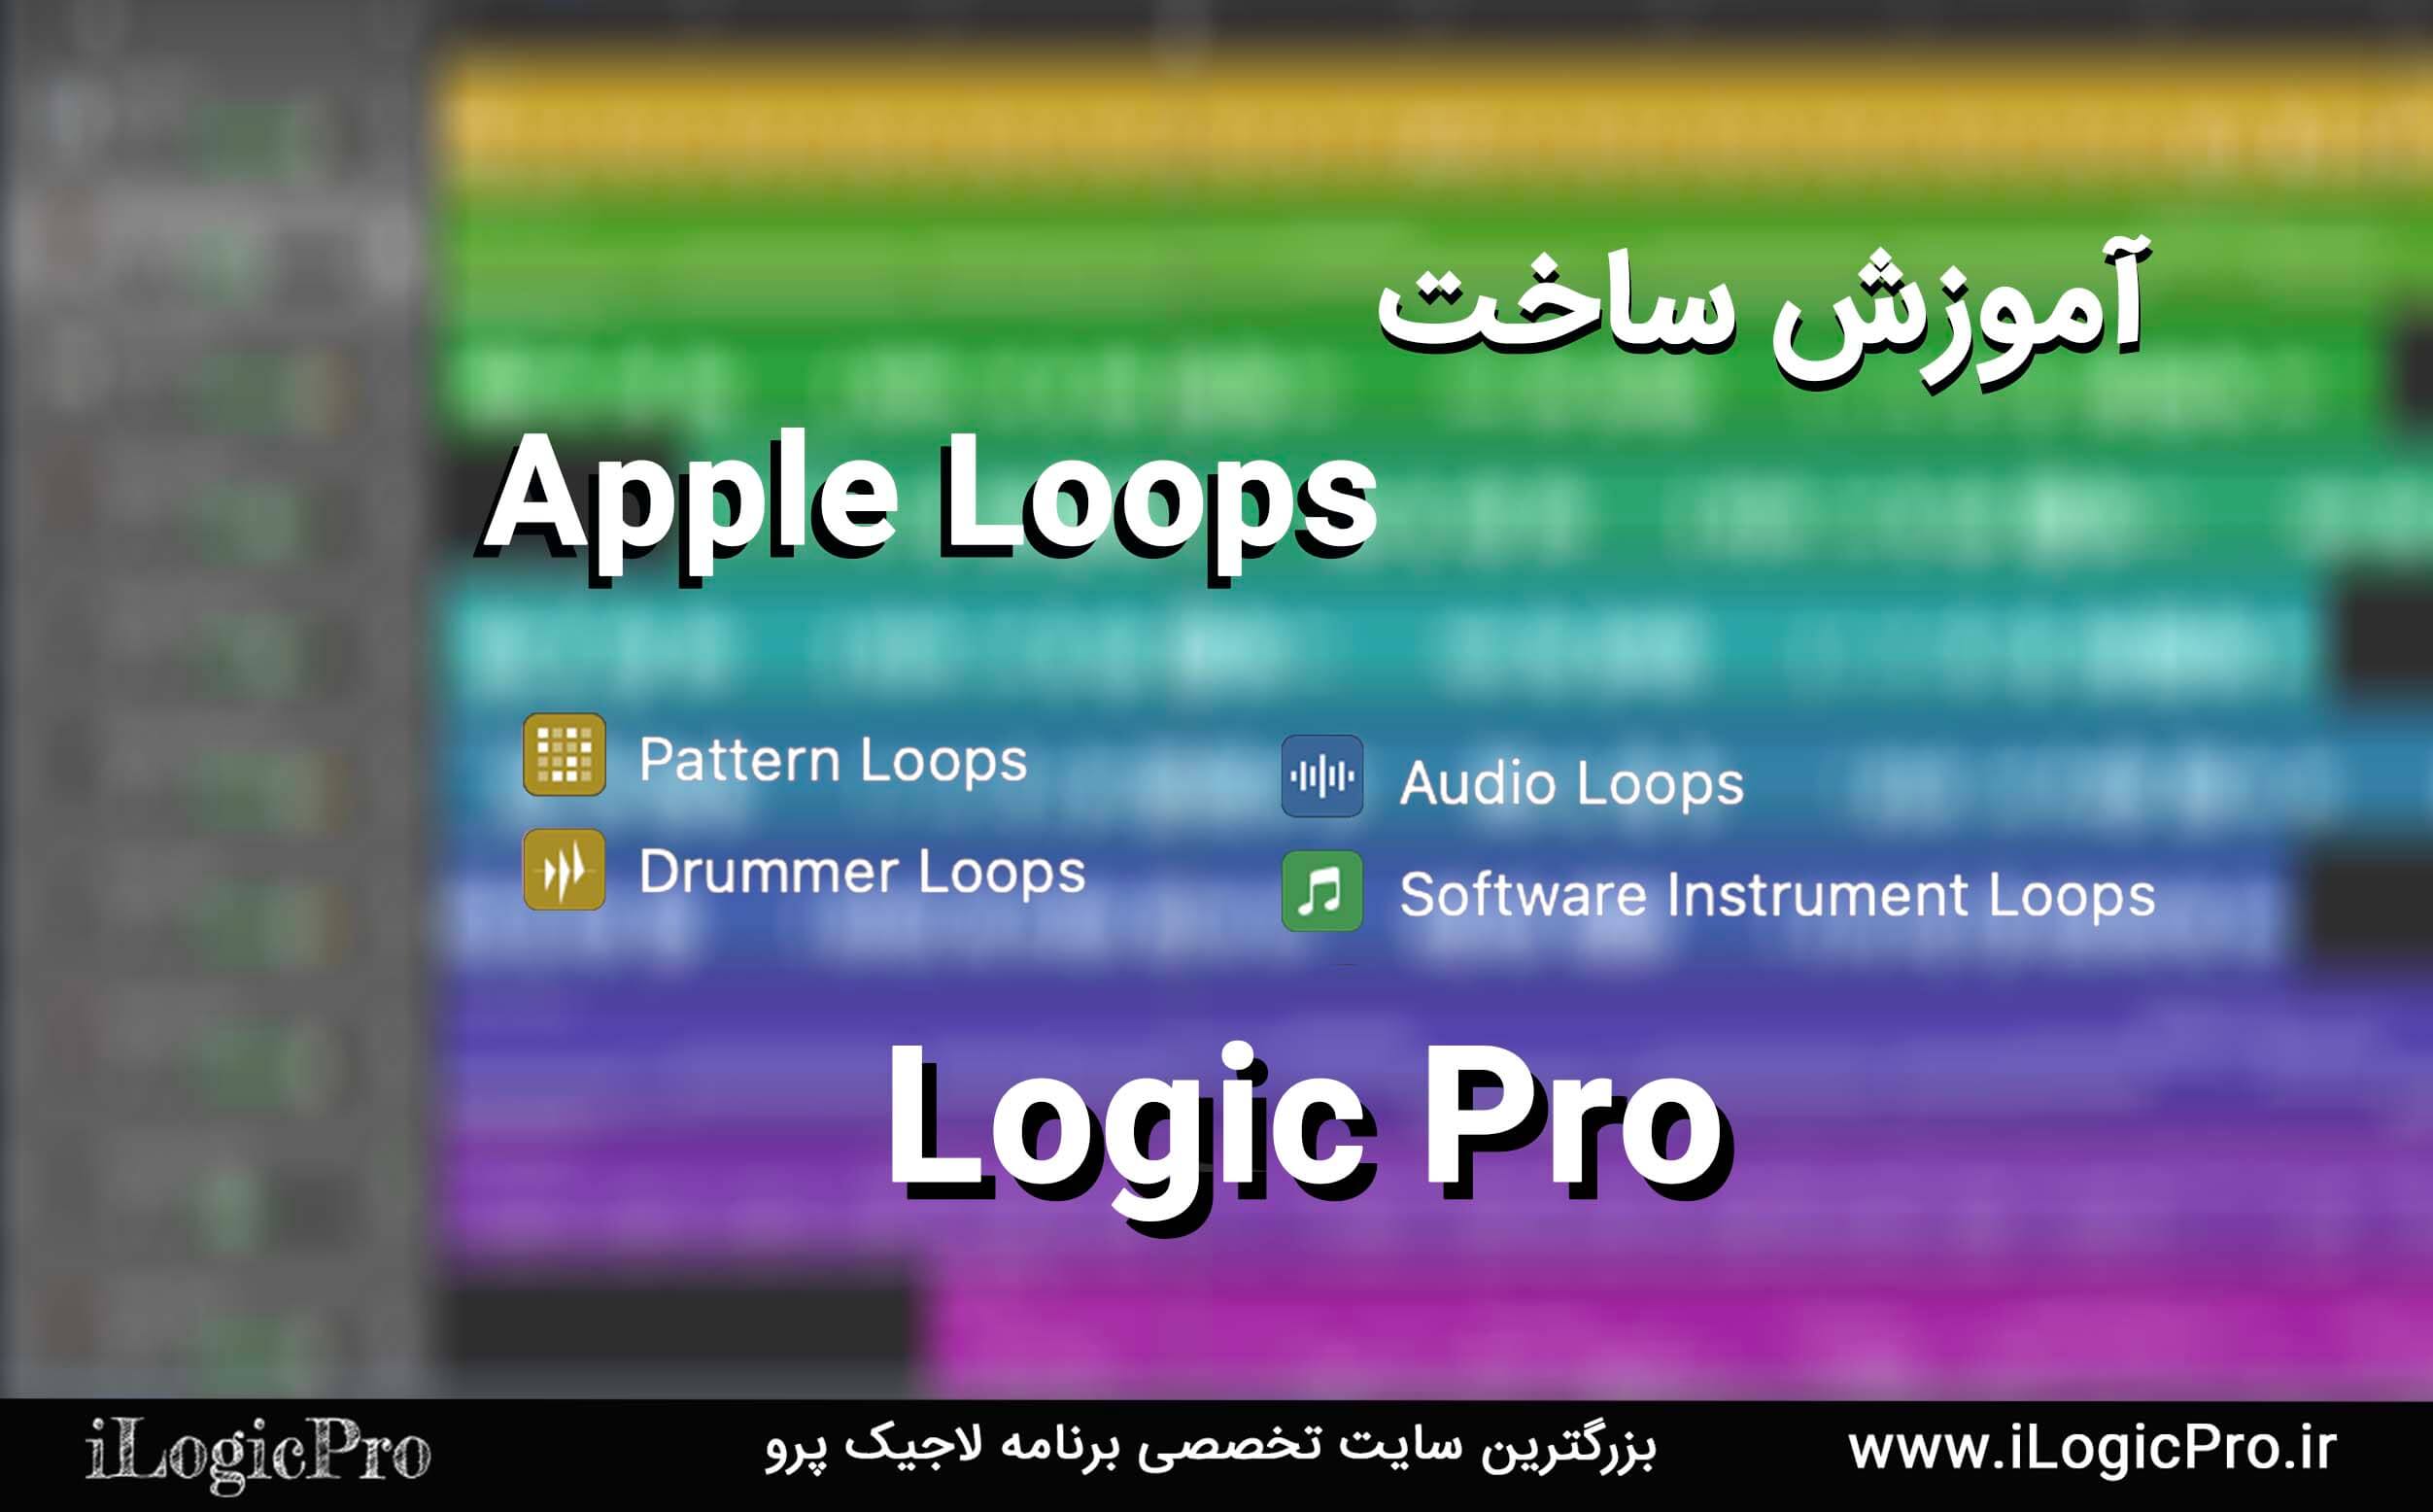 آموزش ساخت Apple Loops Apple Loops یکی از قسمت های بسیار کاربردی در برنامه لاجیک پرو میباشد که میتوان با استفاده از این لوپ ها آهنگ های بسیار جذابی را ساخت اما در این مقاله قصد داریم به شما آموزش دهیم خودتان Apple Loop ایجاد کنید.